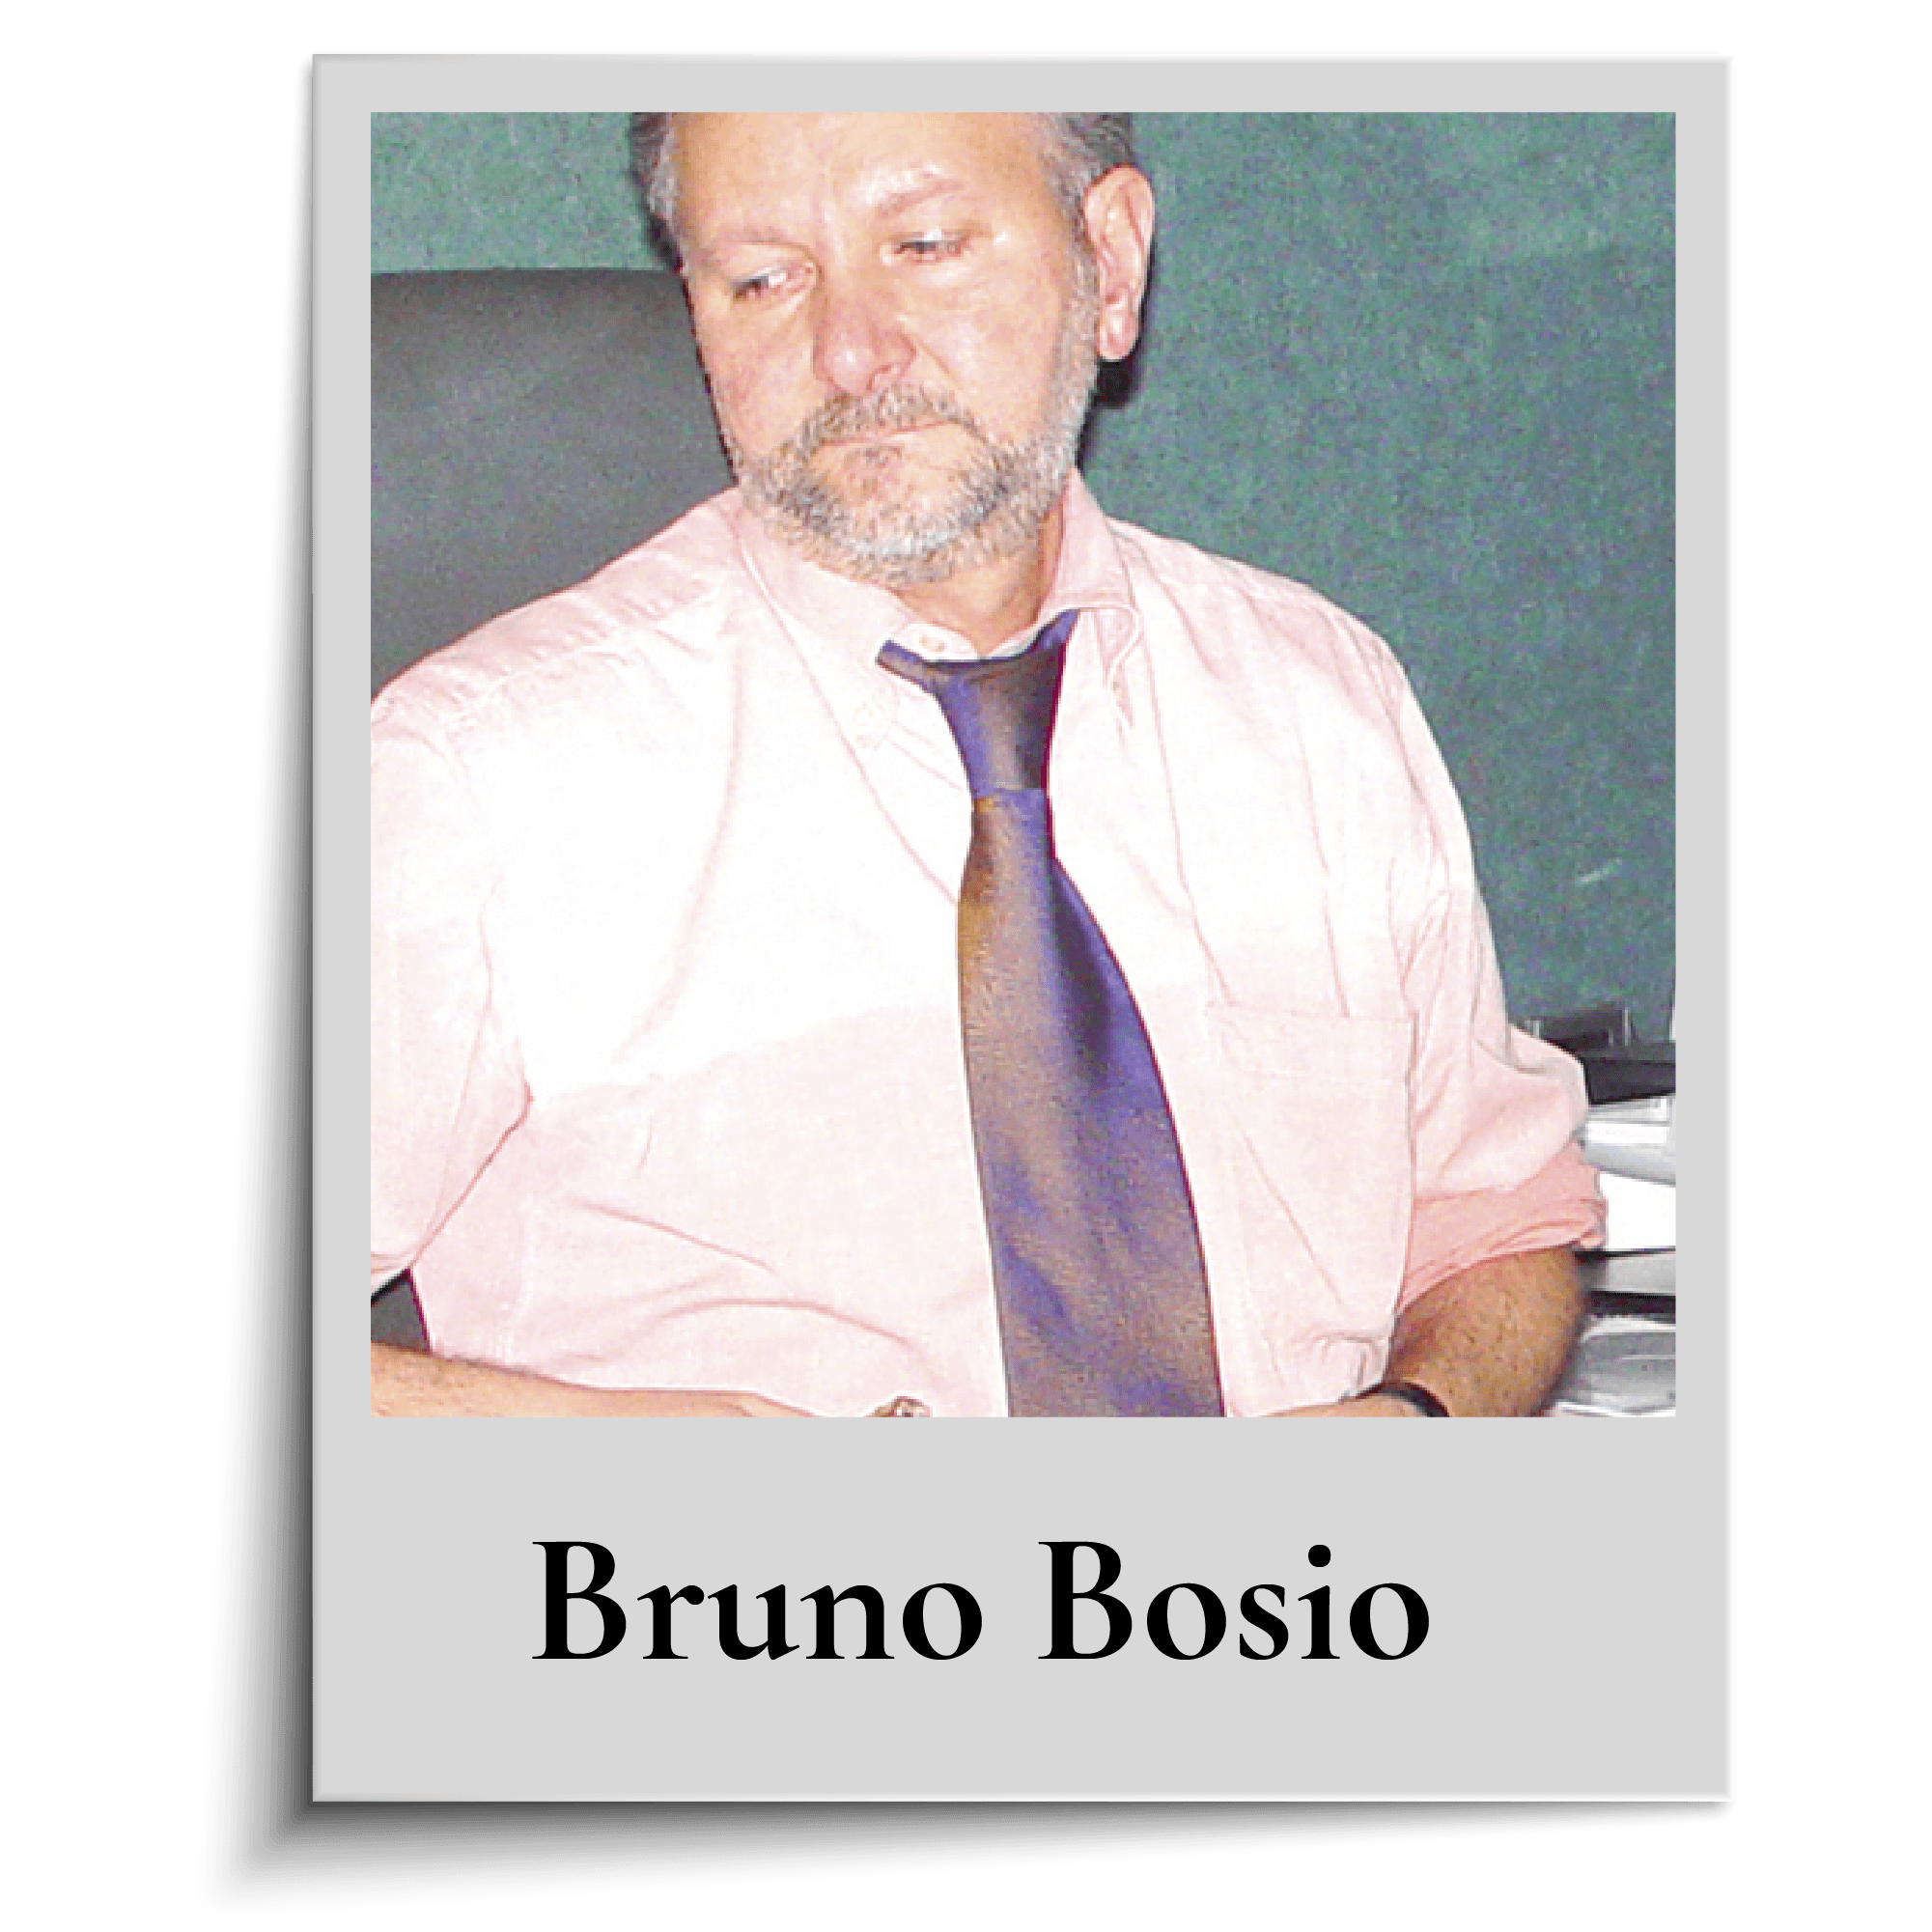 Bruno Bosio